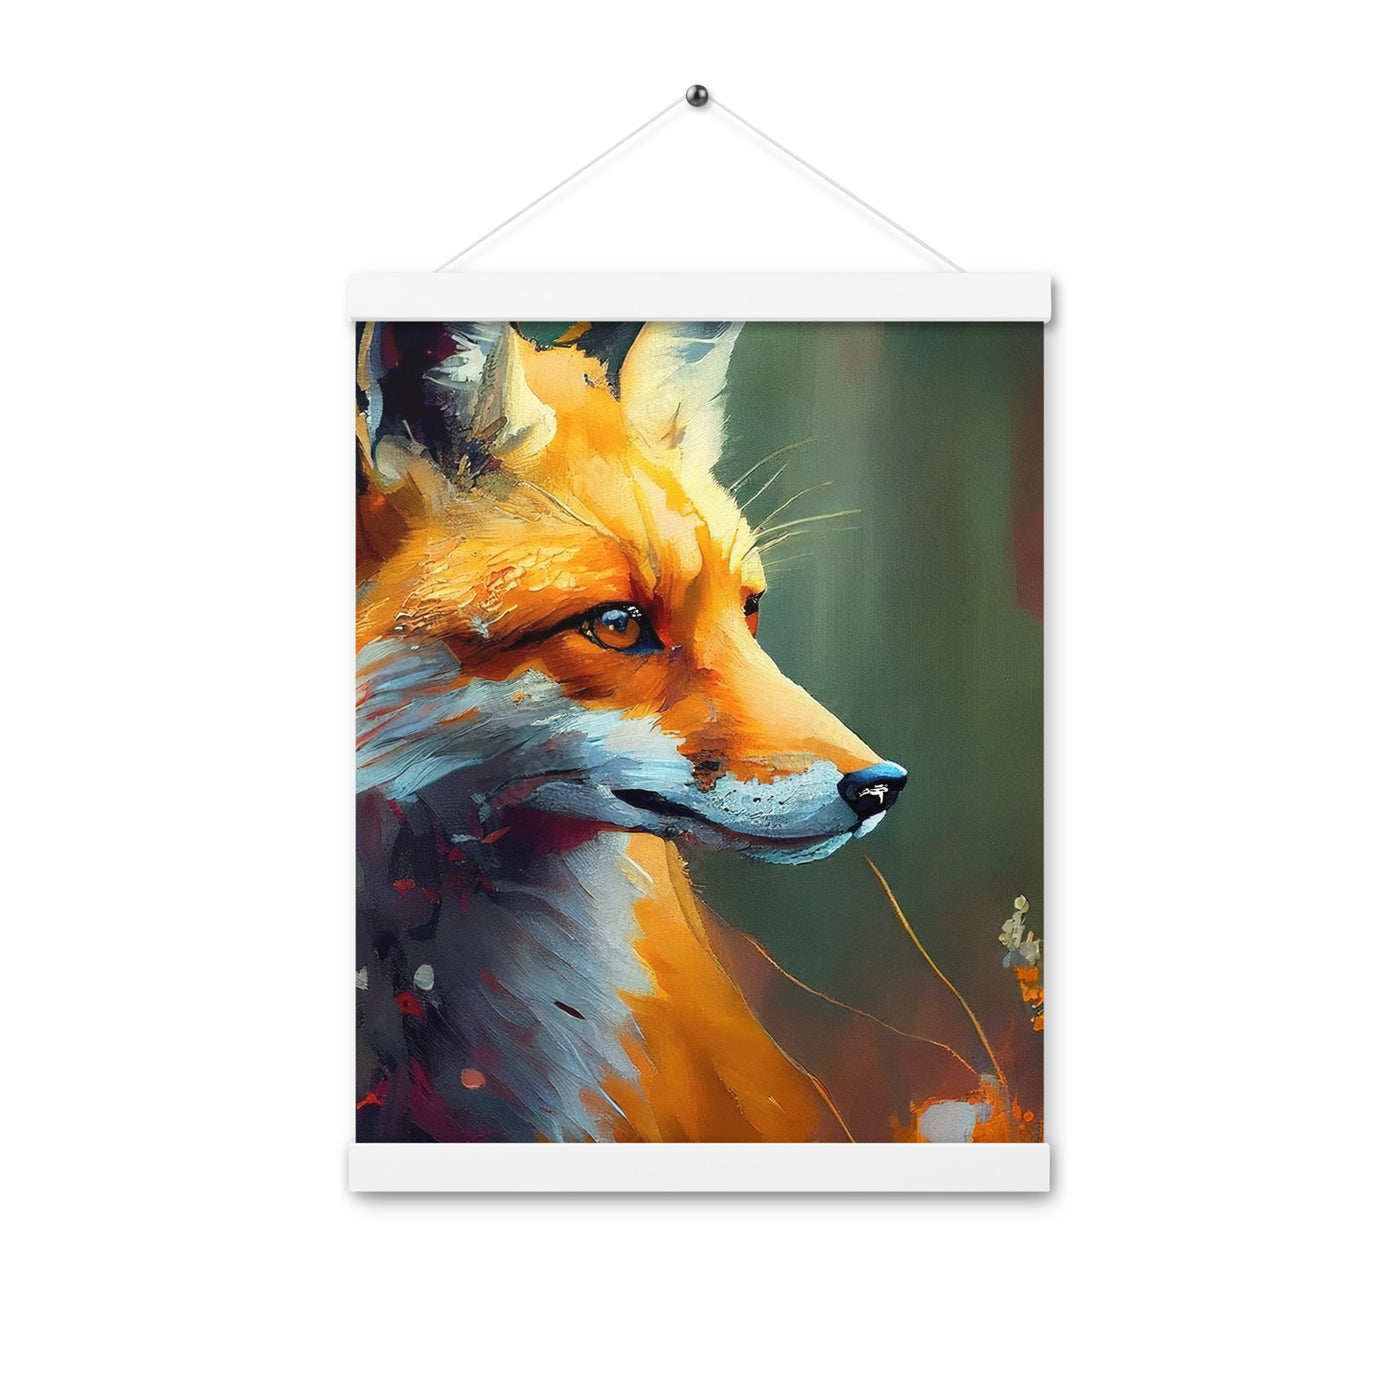 Fuchs - Ölmalerei - Schönes Kunstwerk - Premium Poster mit Aufhängung camping xxx Weiß 30.5 x 40.6 cm